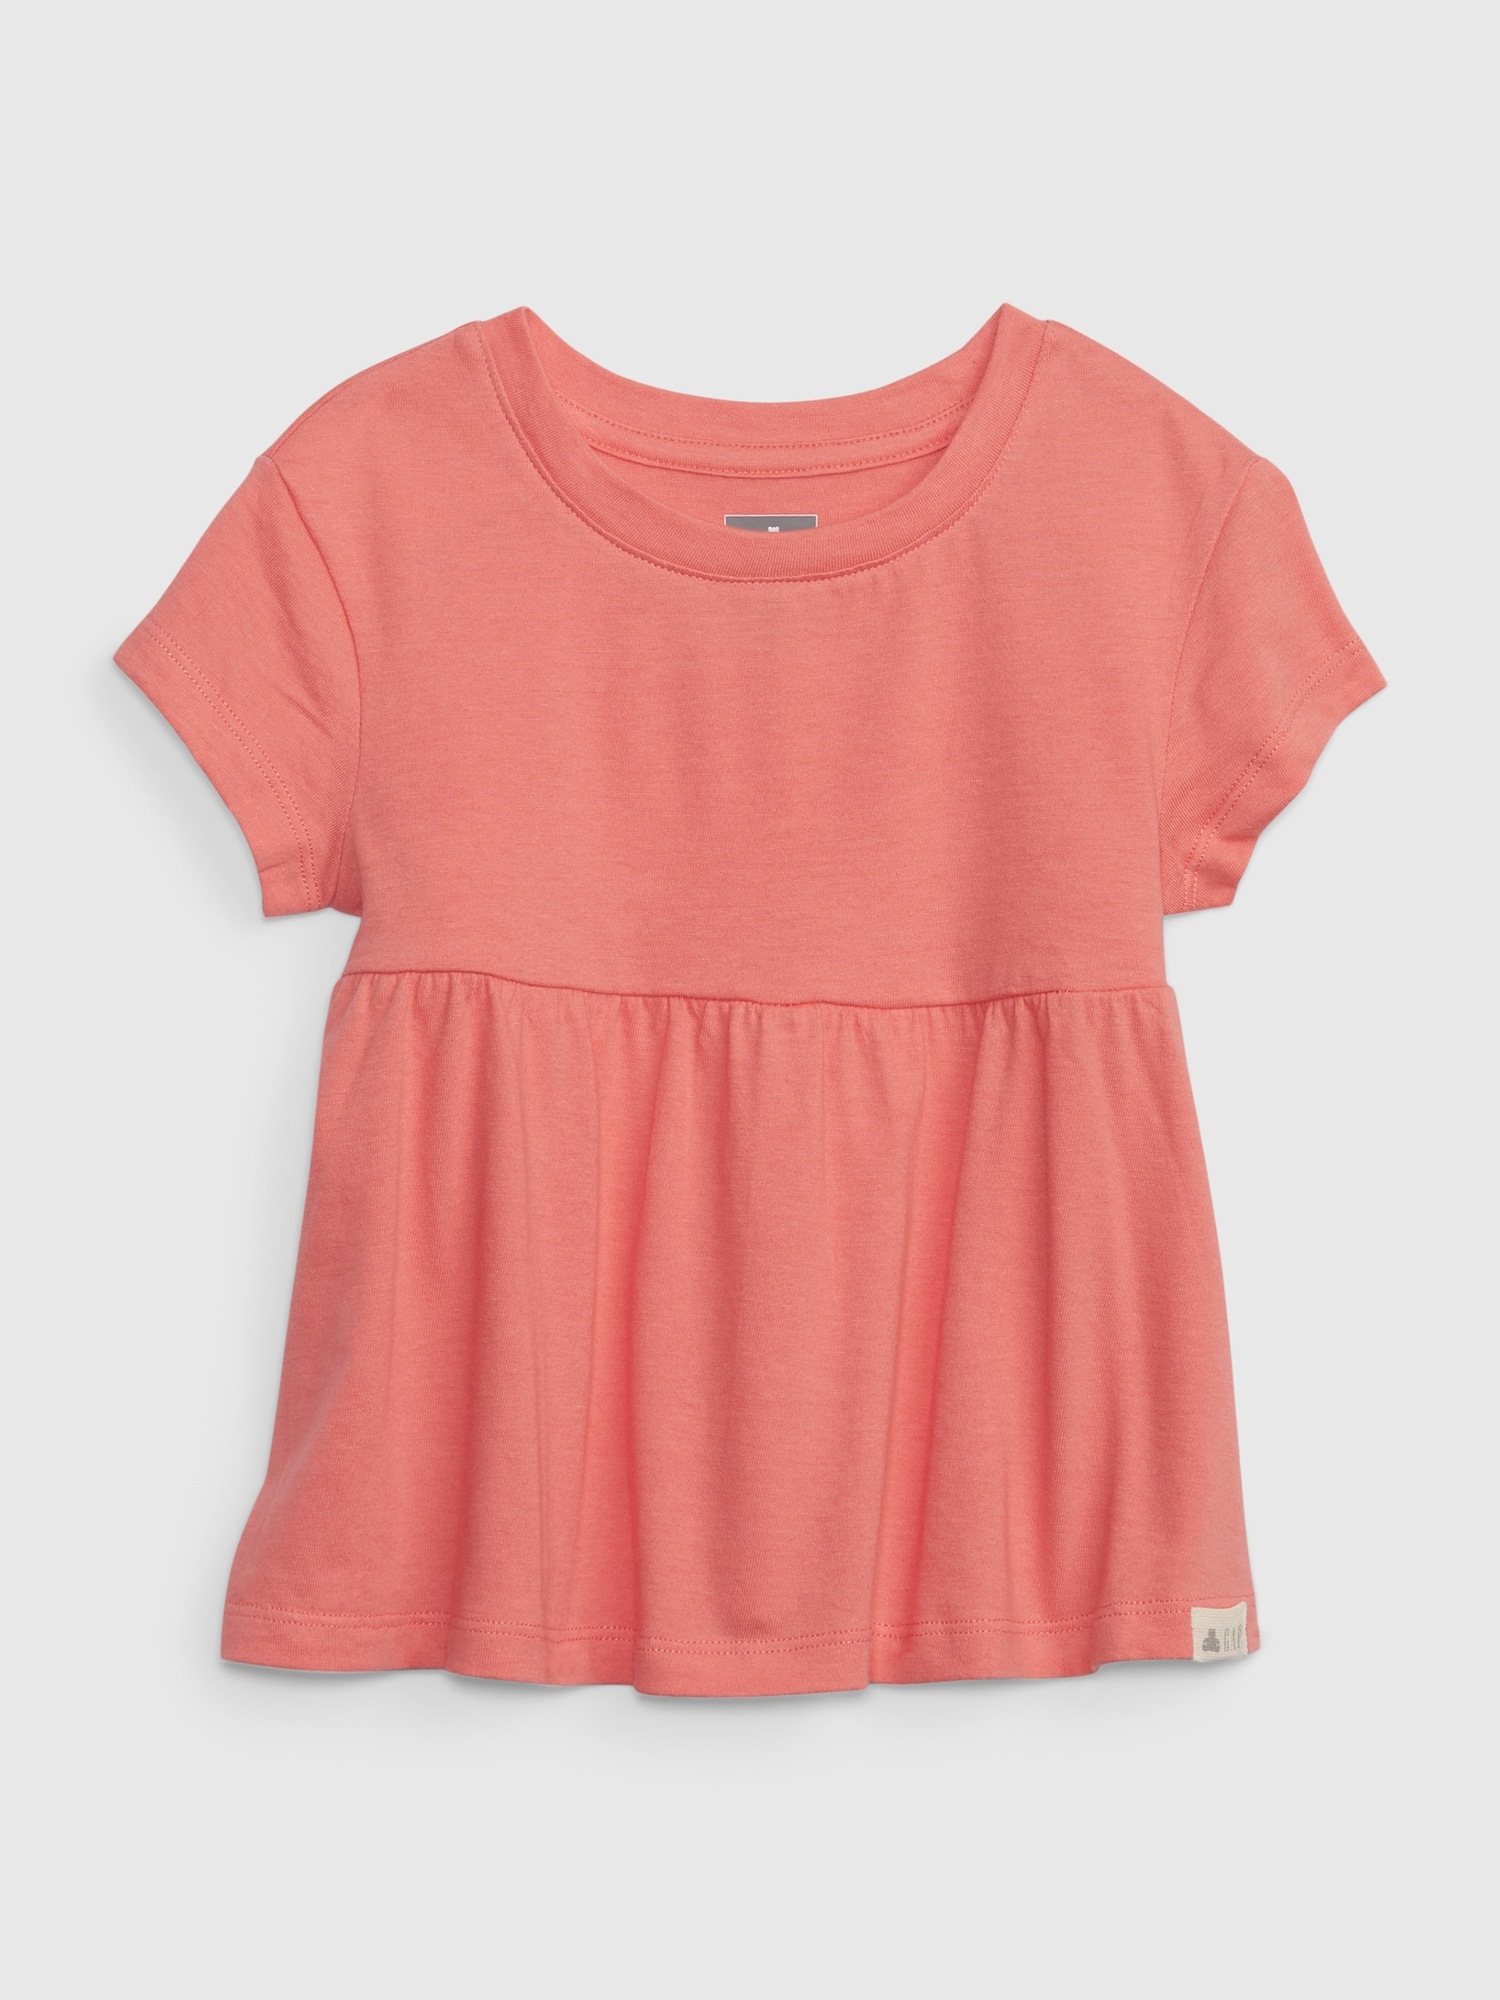 Gap Toddler 100% Organic Cotton Mix and Match Tunic Top pink. 1